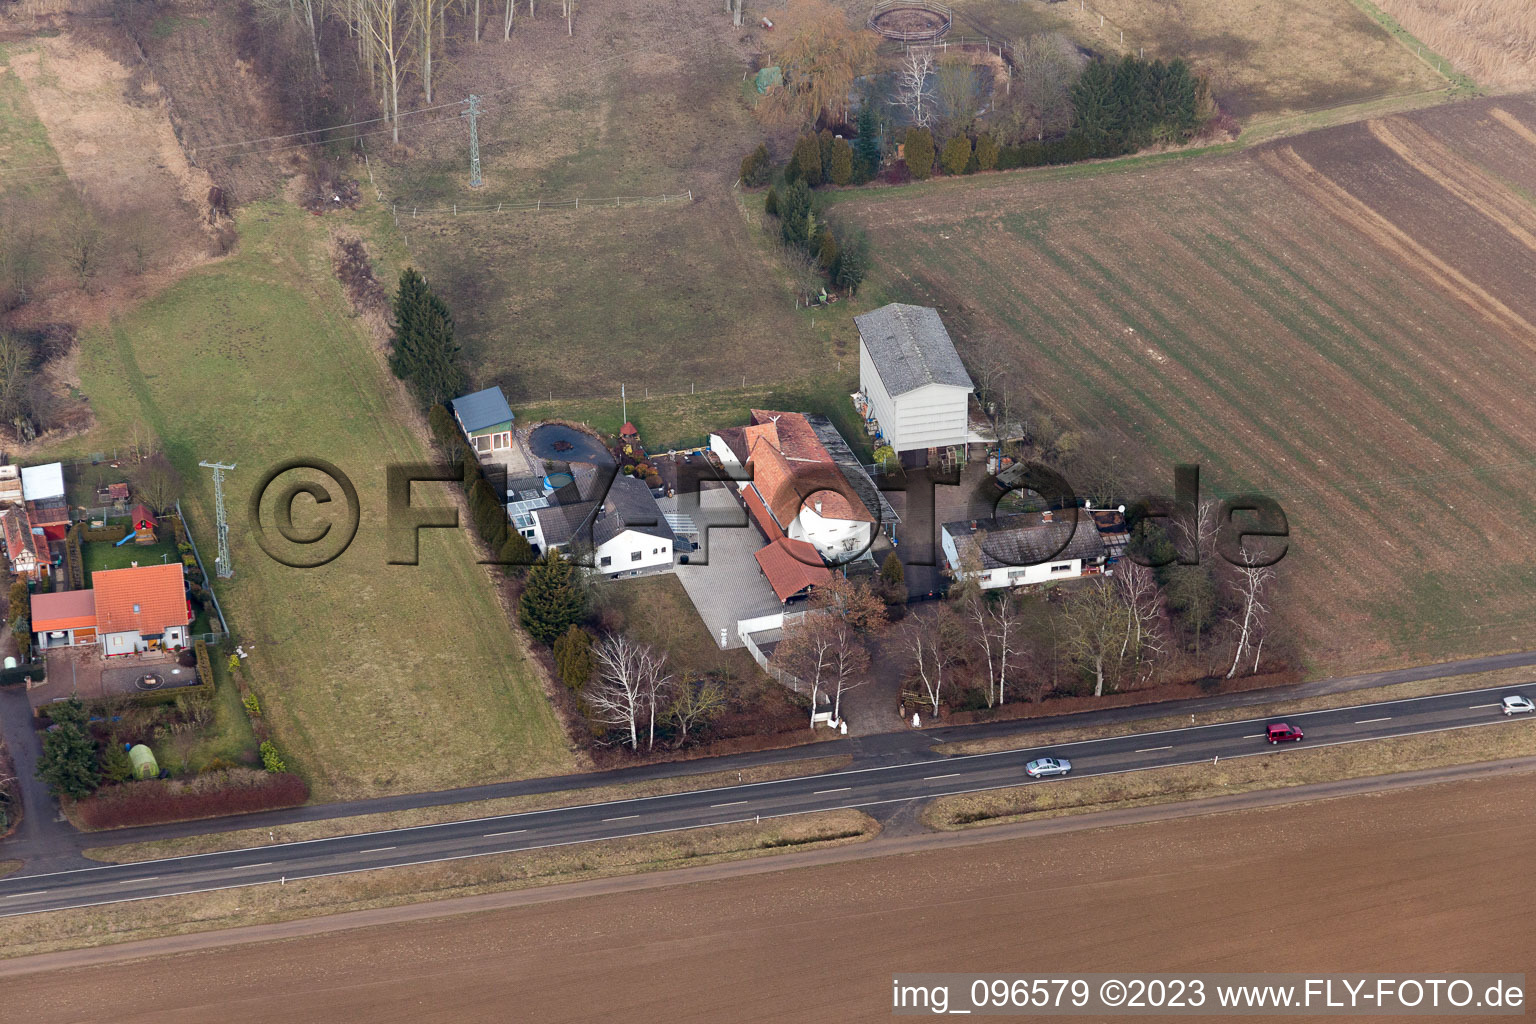 Höfen im Bundesland Rheinland-Pfalz, Deutschland von der Drohne aus gesehen